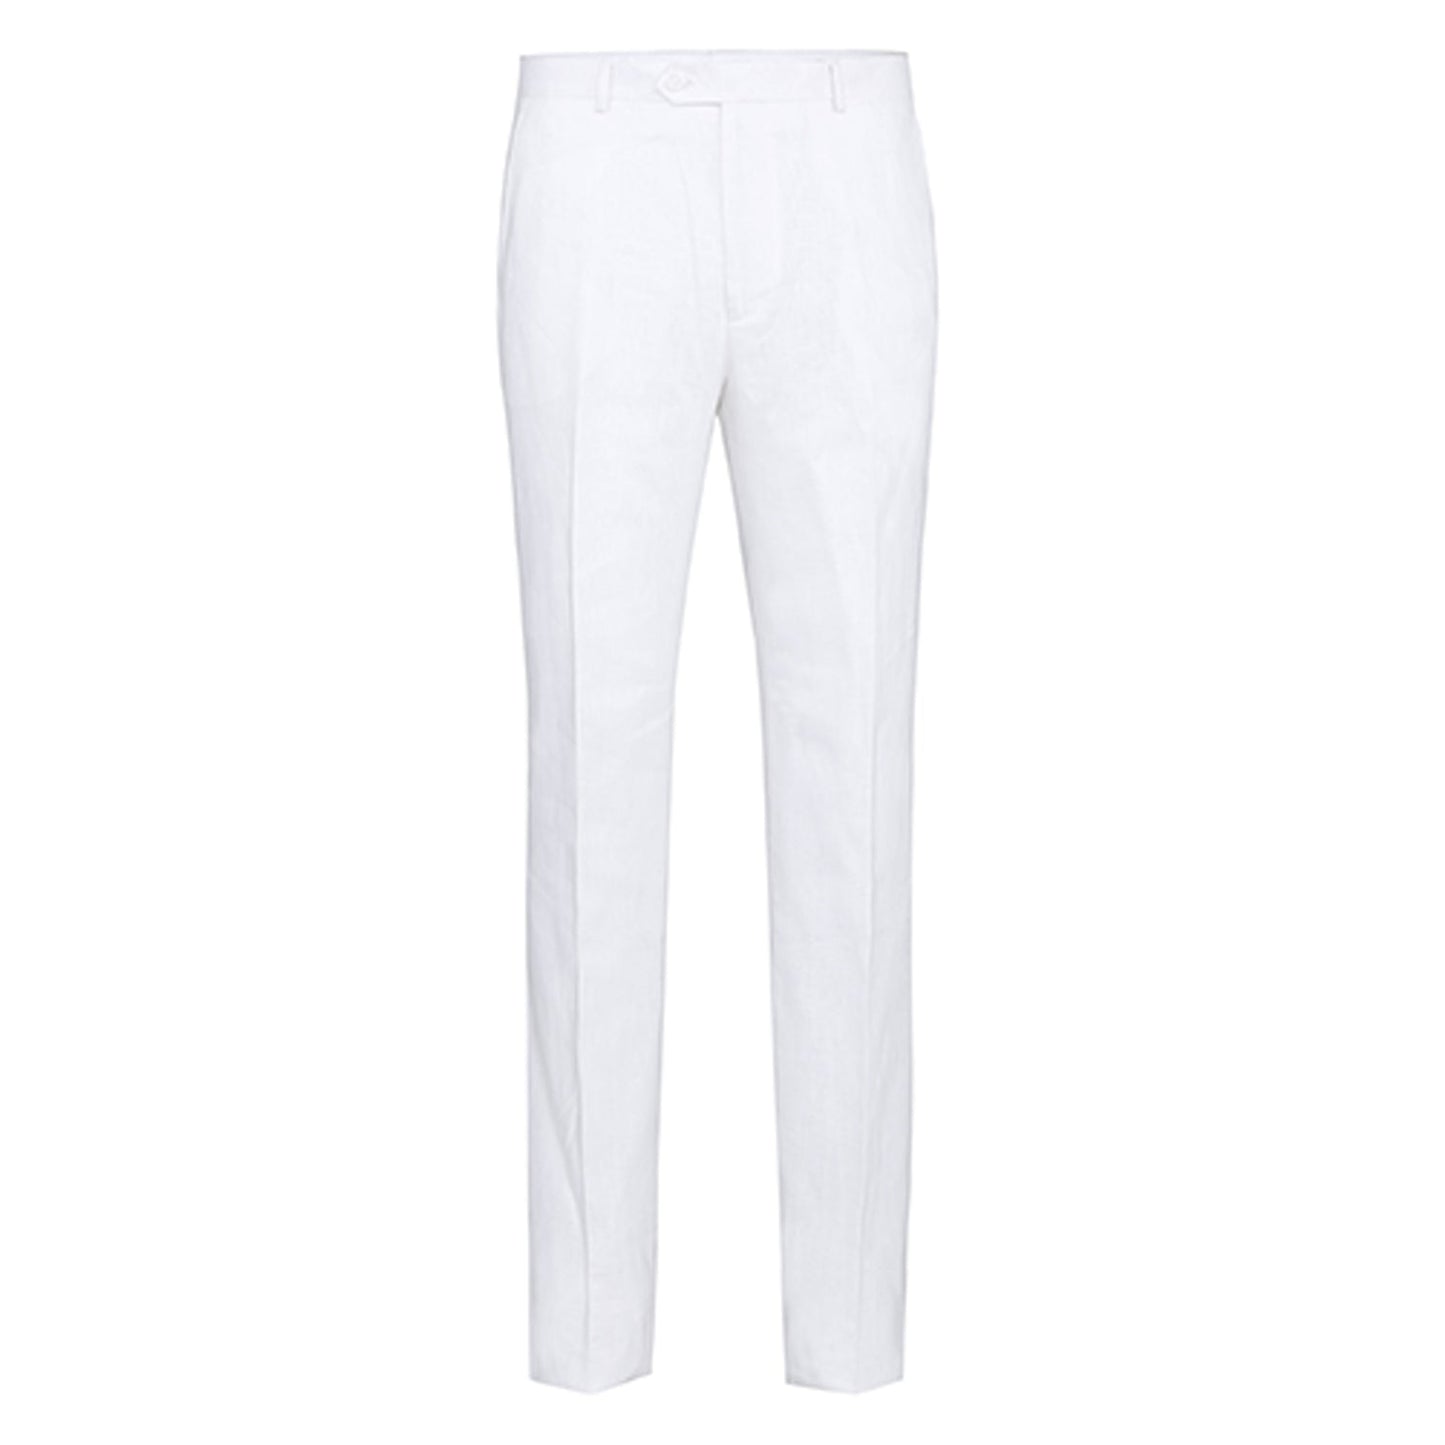 601-20 Men's Notch Lapel White Solid 100% Linen Suit